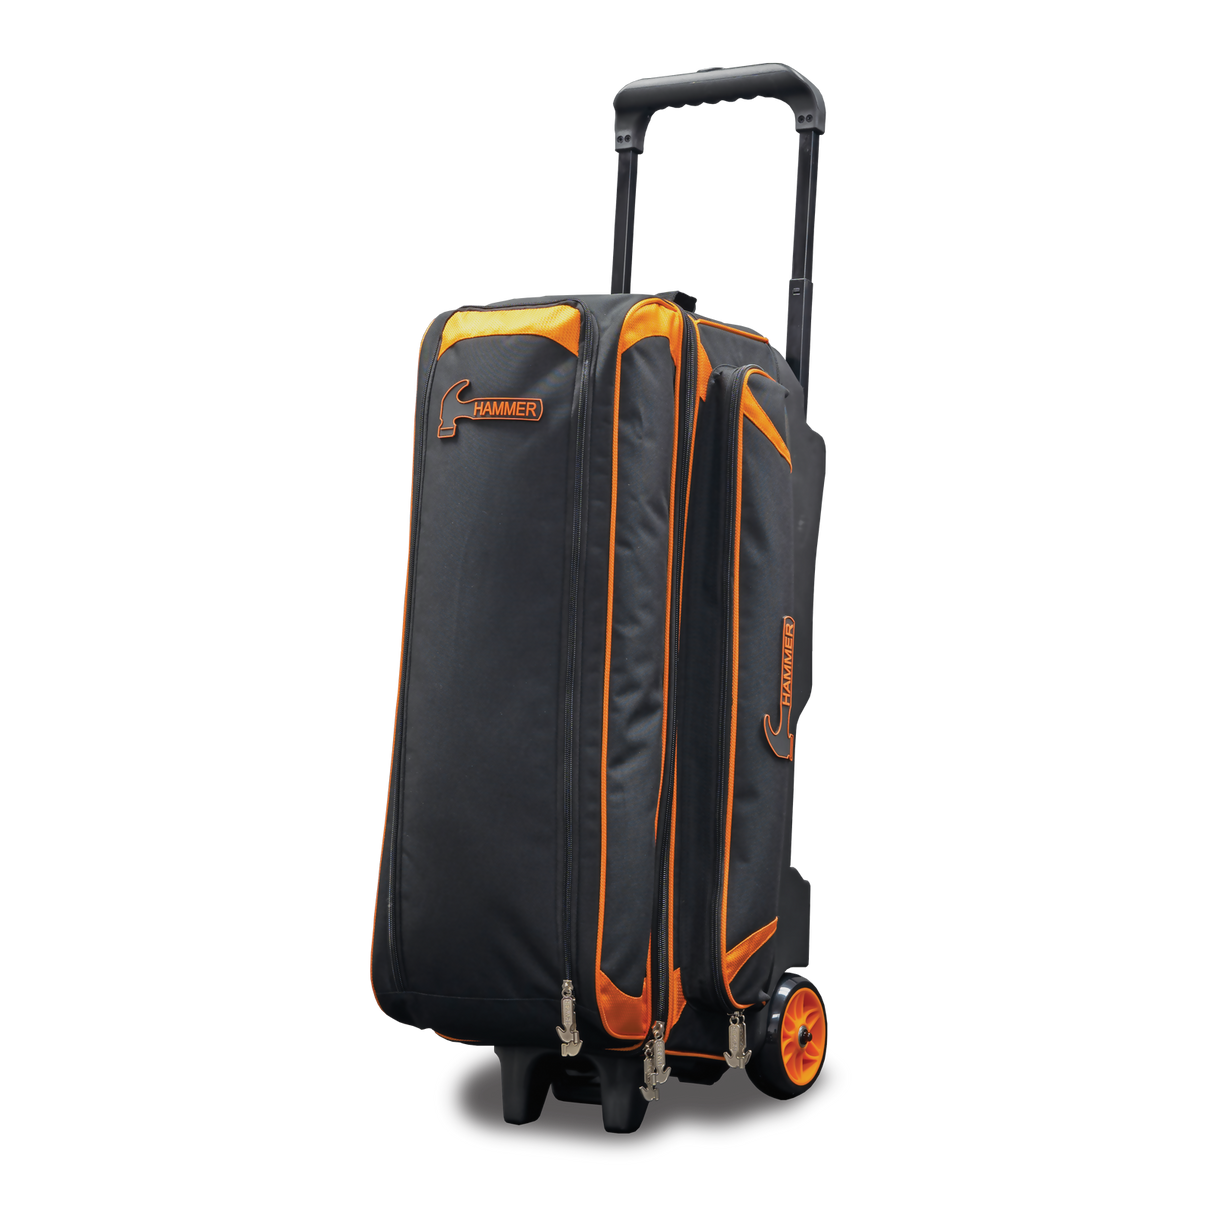 Hammer Premium Black/Orange 3 Ball Triple Roller Bowling Bag suitcase league tournament play sale discount coupon online pba tour